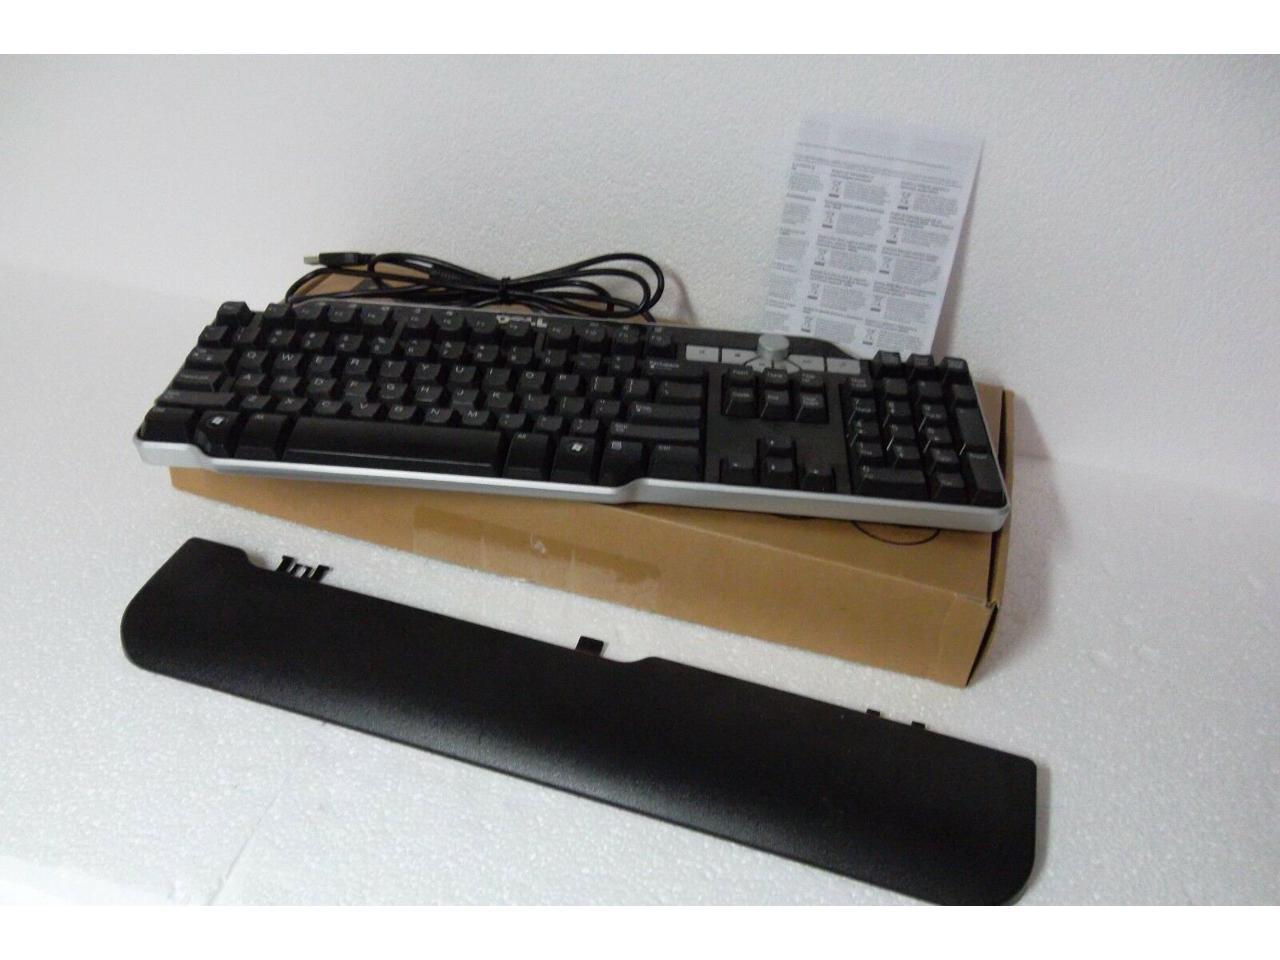 DELL SK-8135 USB Enhanced Multimedia 104-Key Keyboard w/Knob TH836 N6250 DJ425 